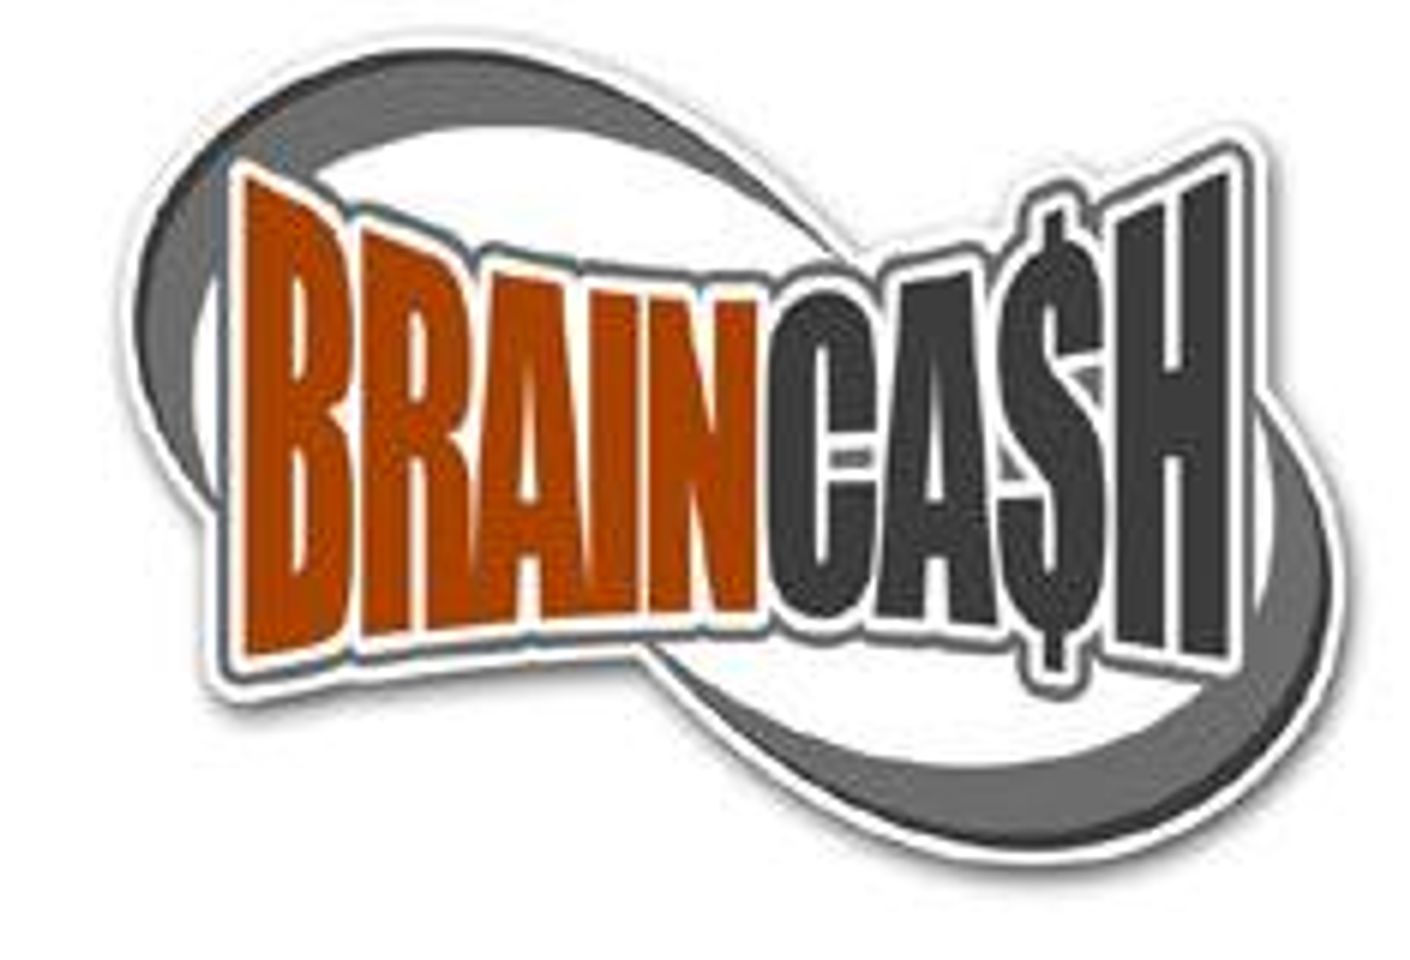 BrainCash.com Launches PetersCumshots.com